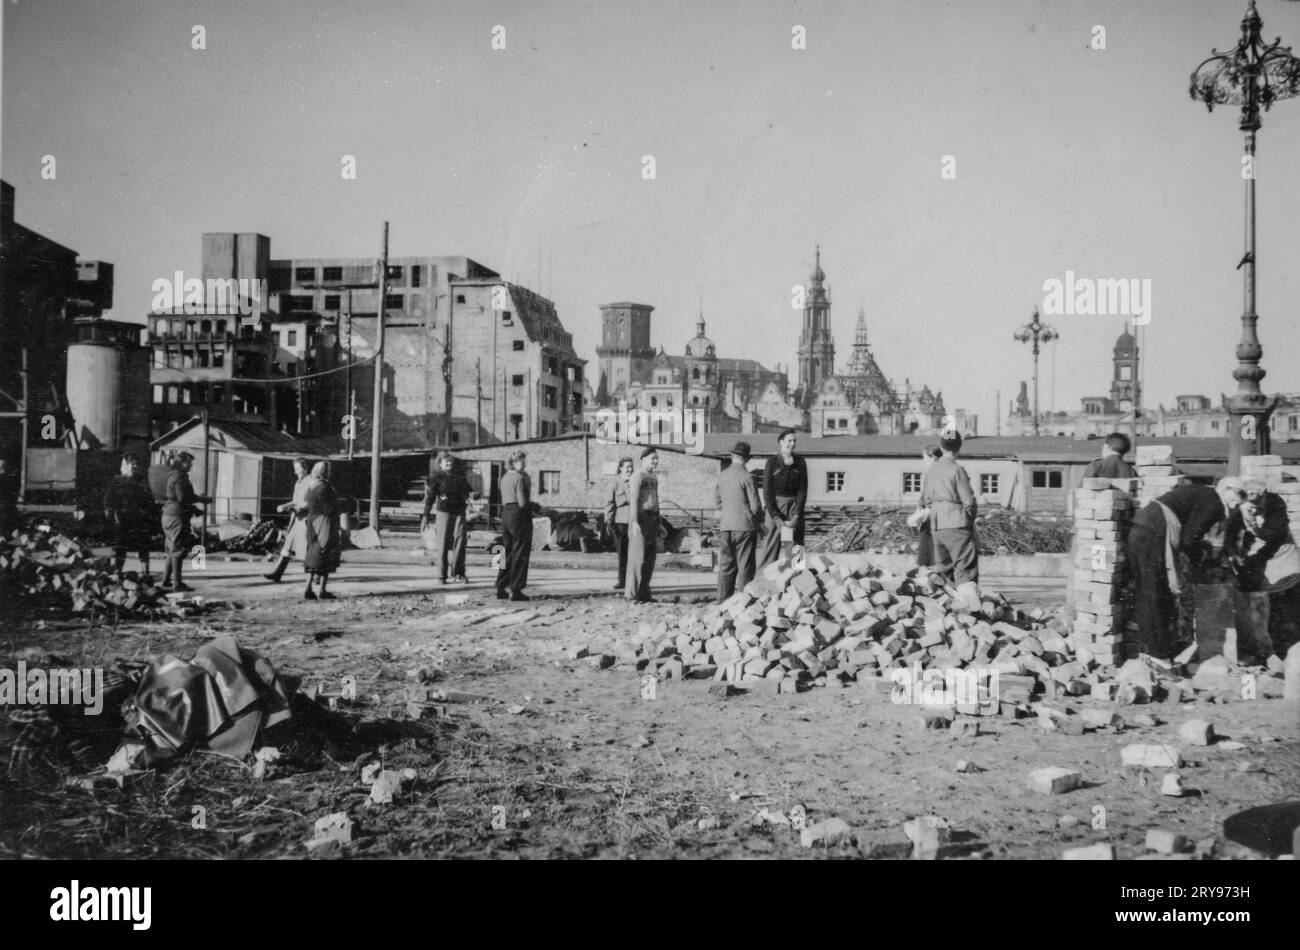 Missione scolastica per ripulire la città vecchia di Dresda, che si trovava in rovina dopo i bombardamenti del febbraio 1945. Qui il Dresden Altmarkt con vista sul Foto Stock